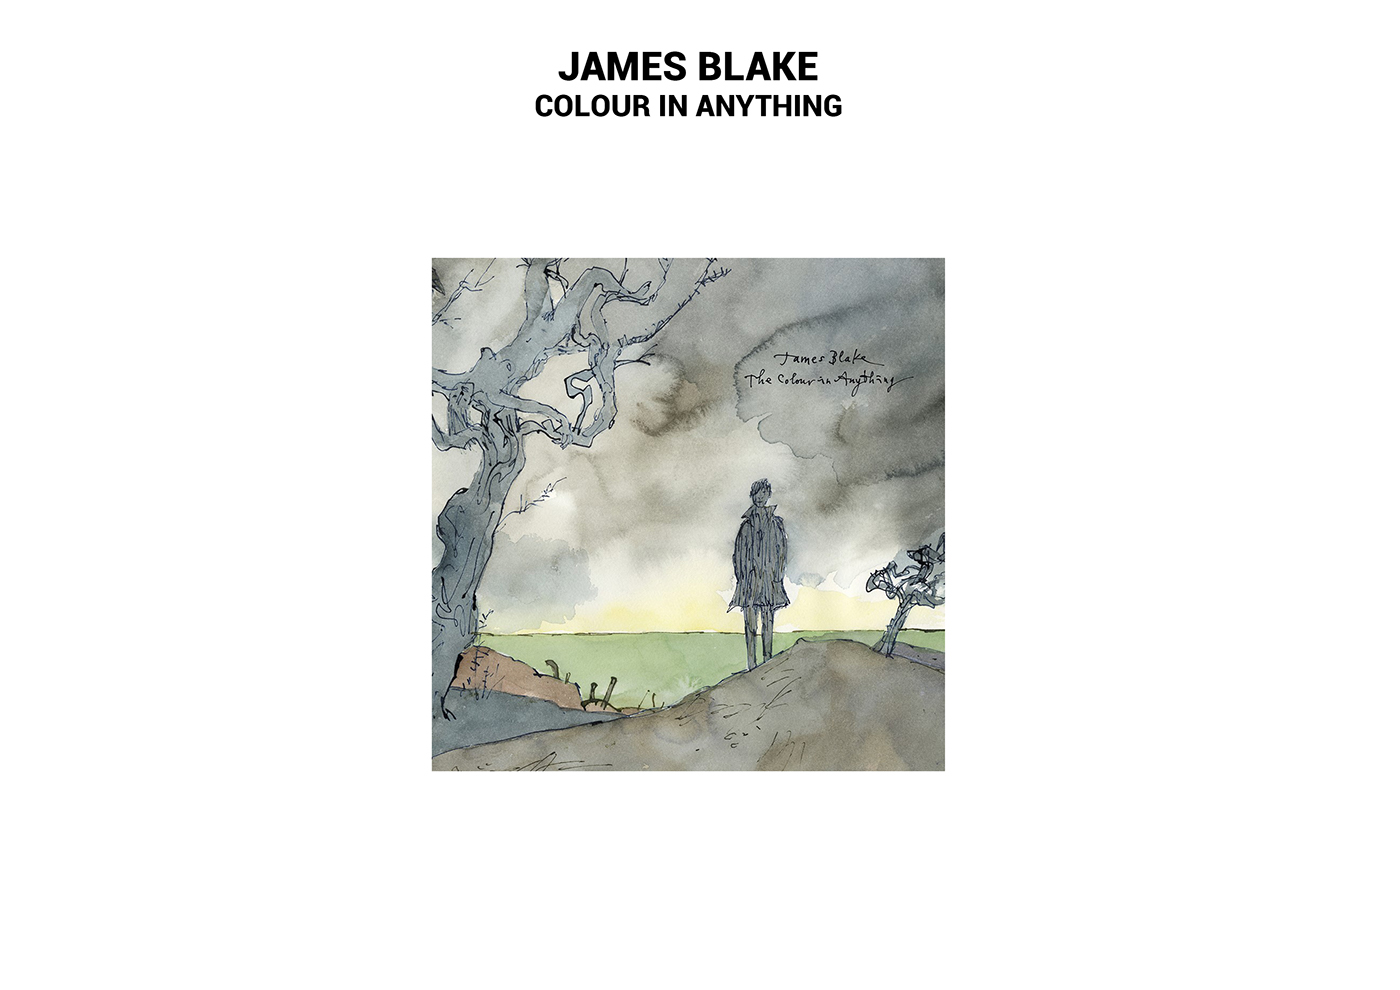 james blake album art album artwork music timeless